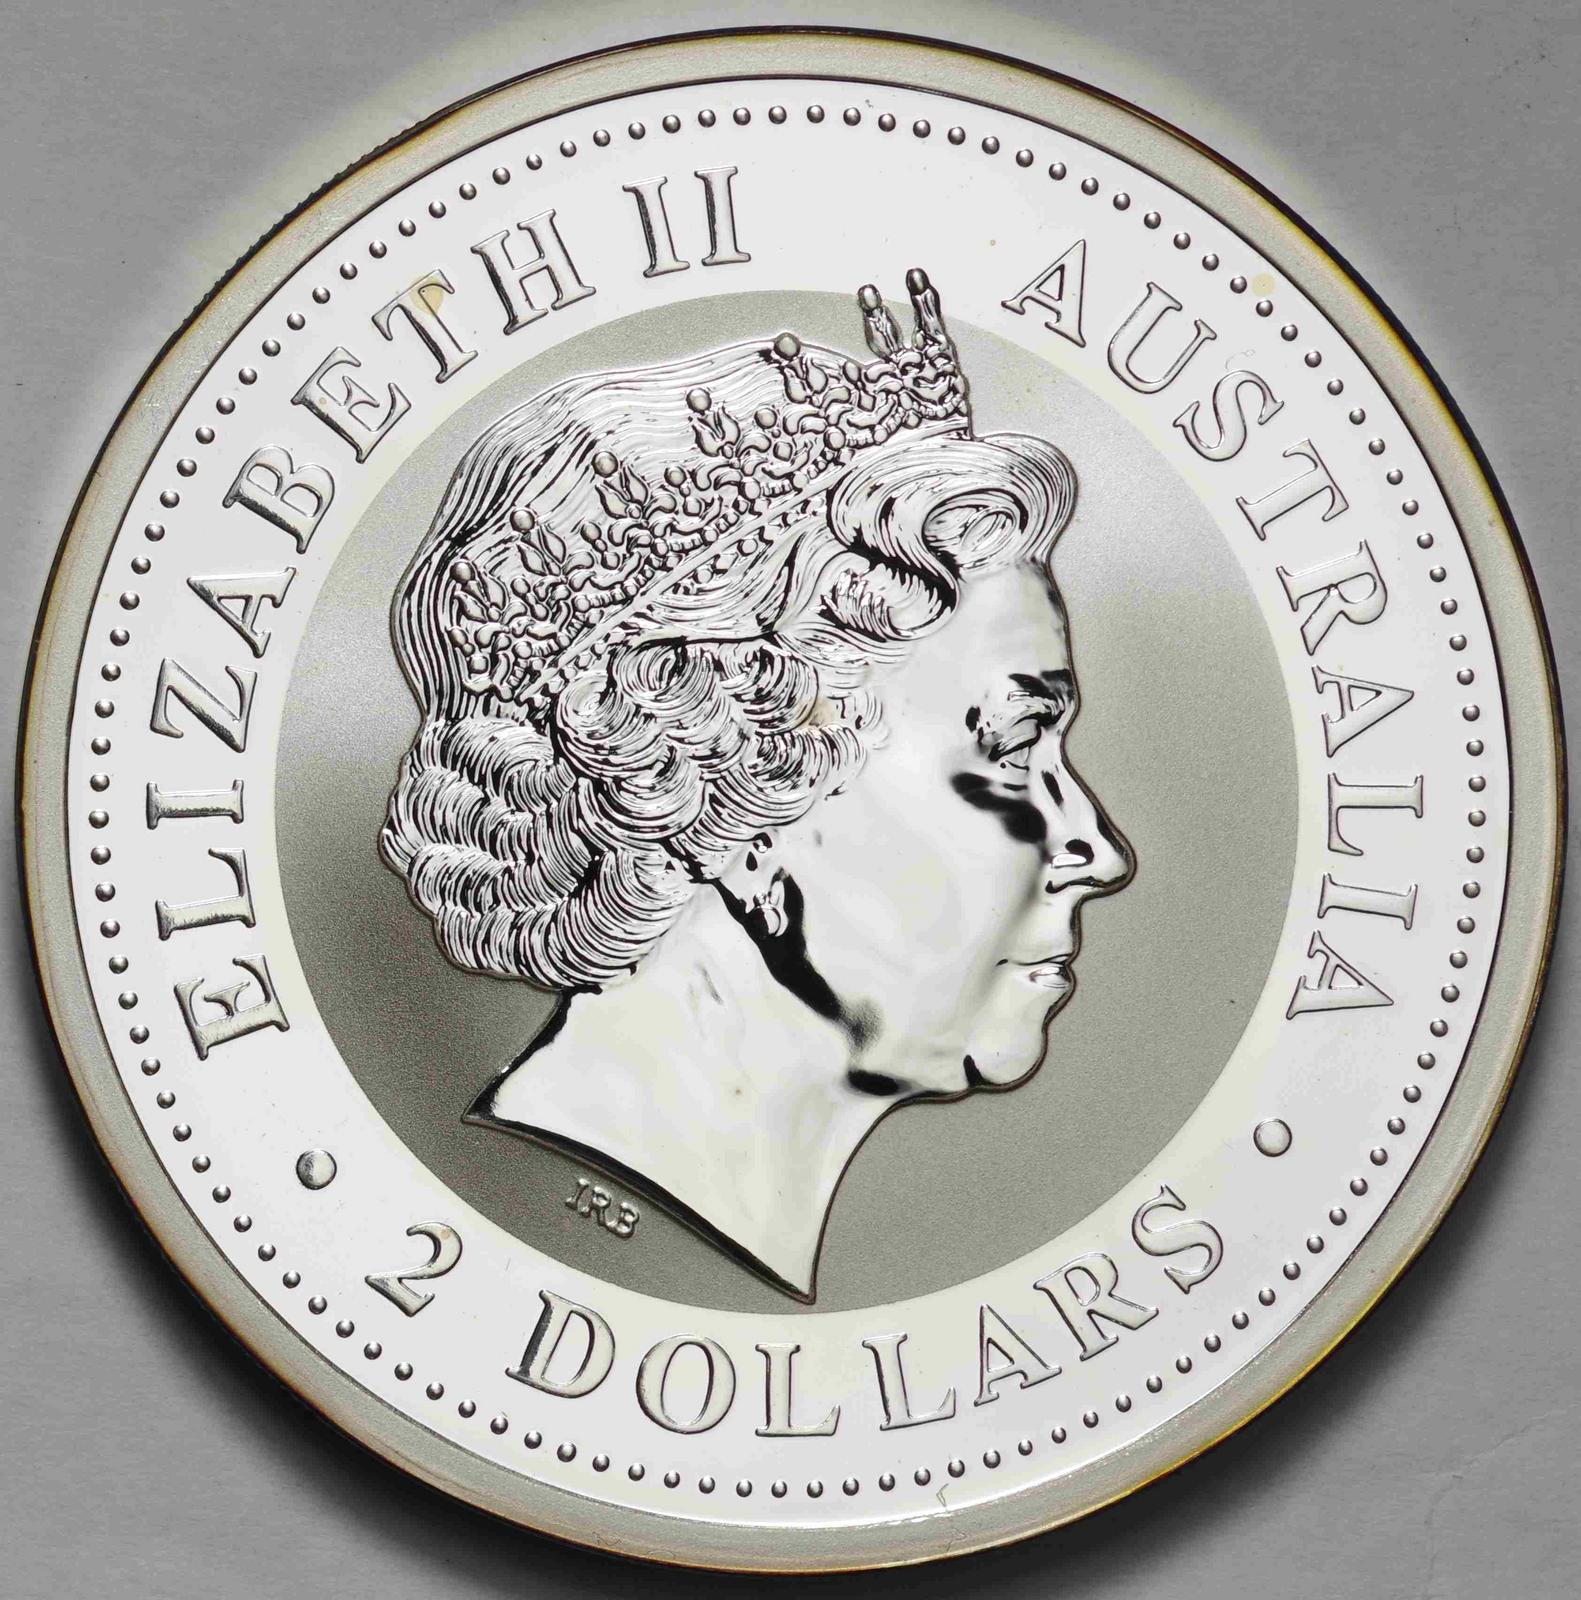 オーストラリア-Australia. 十二支干支 辰年竜図 2ドル(2オンス)銀貨 